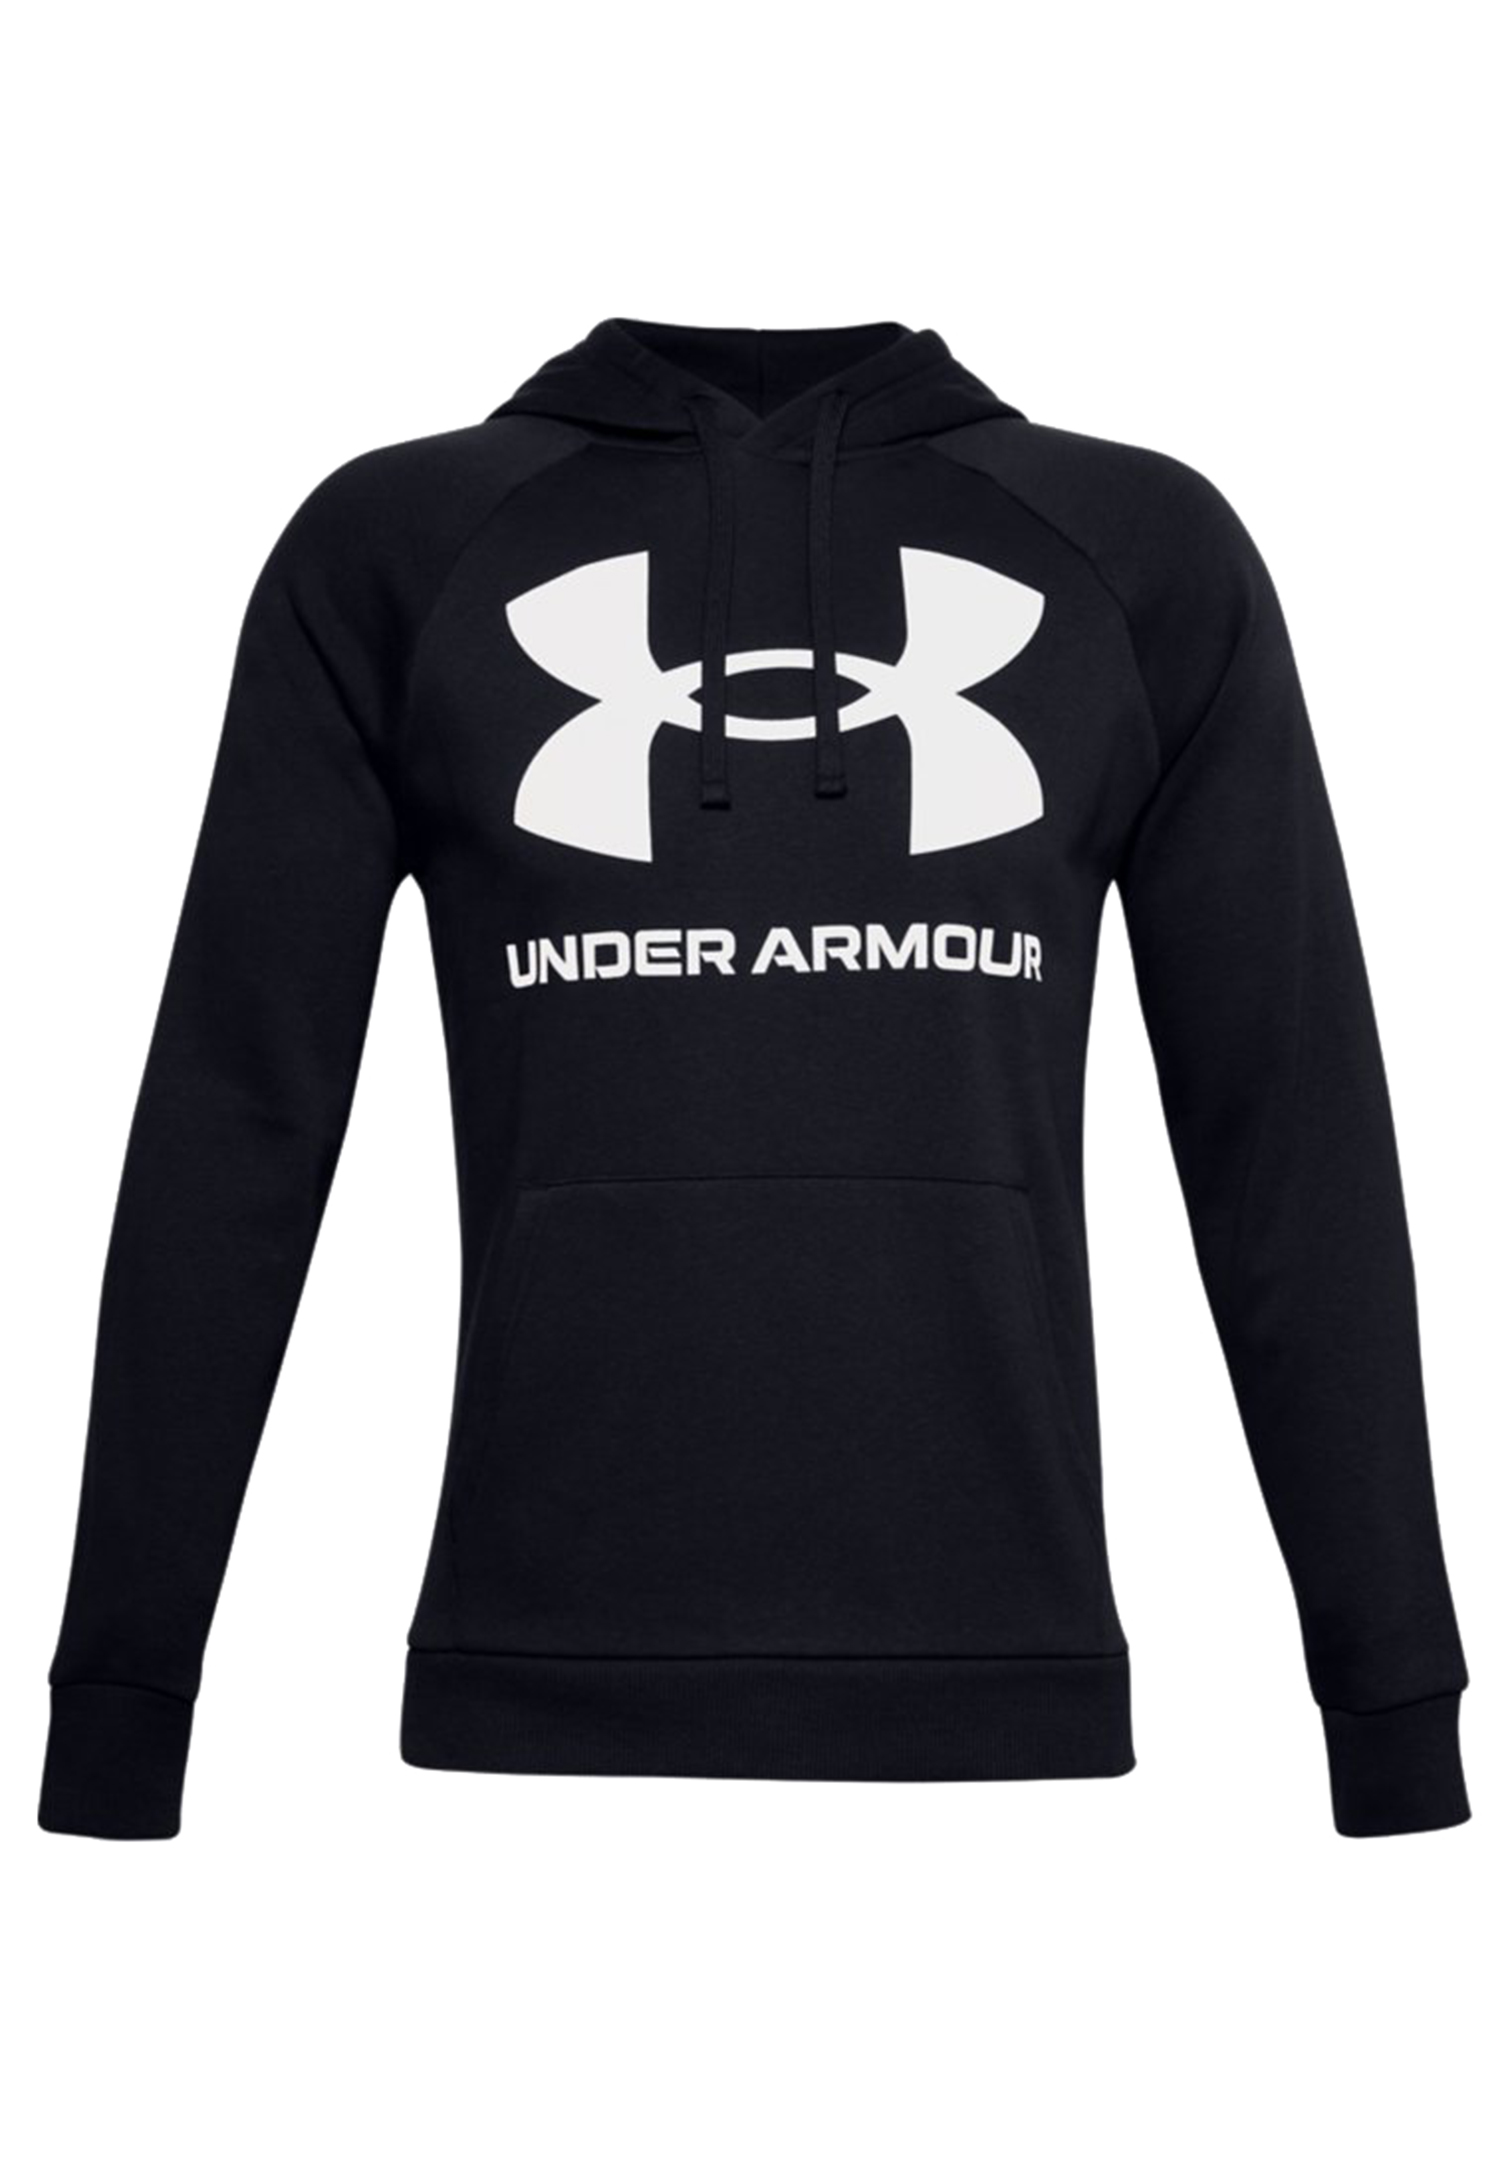 Under Armour Rival Fleece Big Logo Hoodie Herren Sweatshirt 1357093 001 schwarz